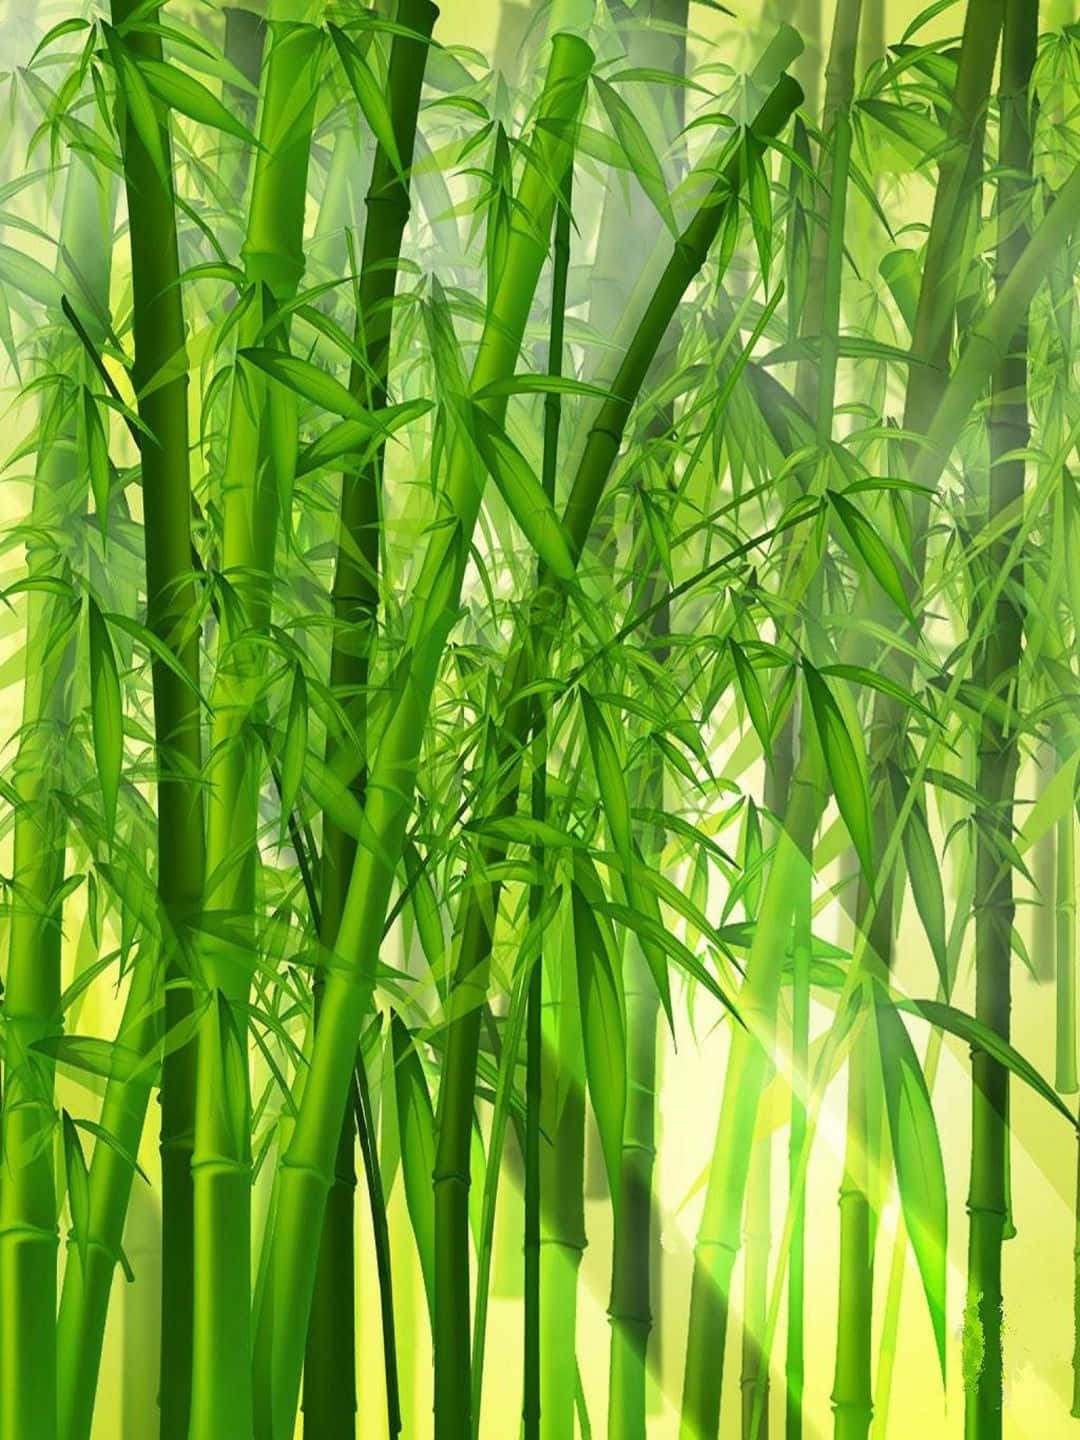 Pinturade Fundo De Bambu Em Resolução De 1440p Com Desenho De Árvores De Bambu.